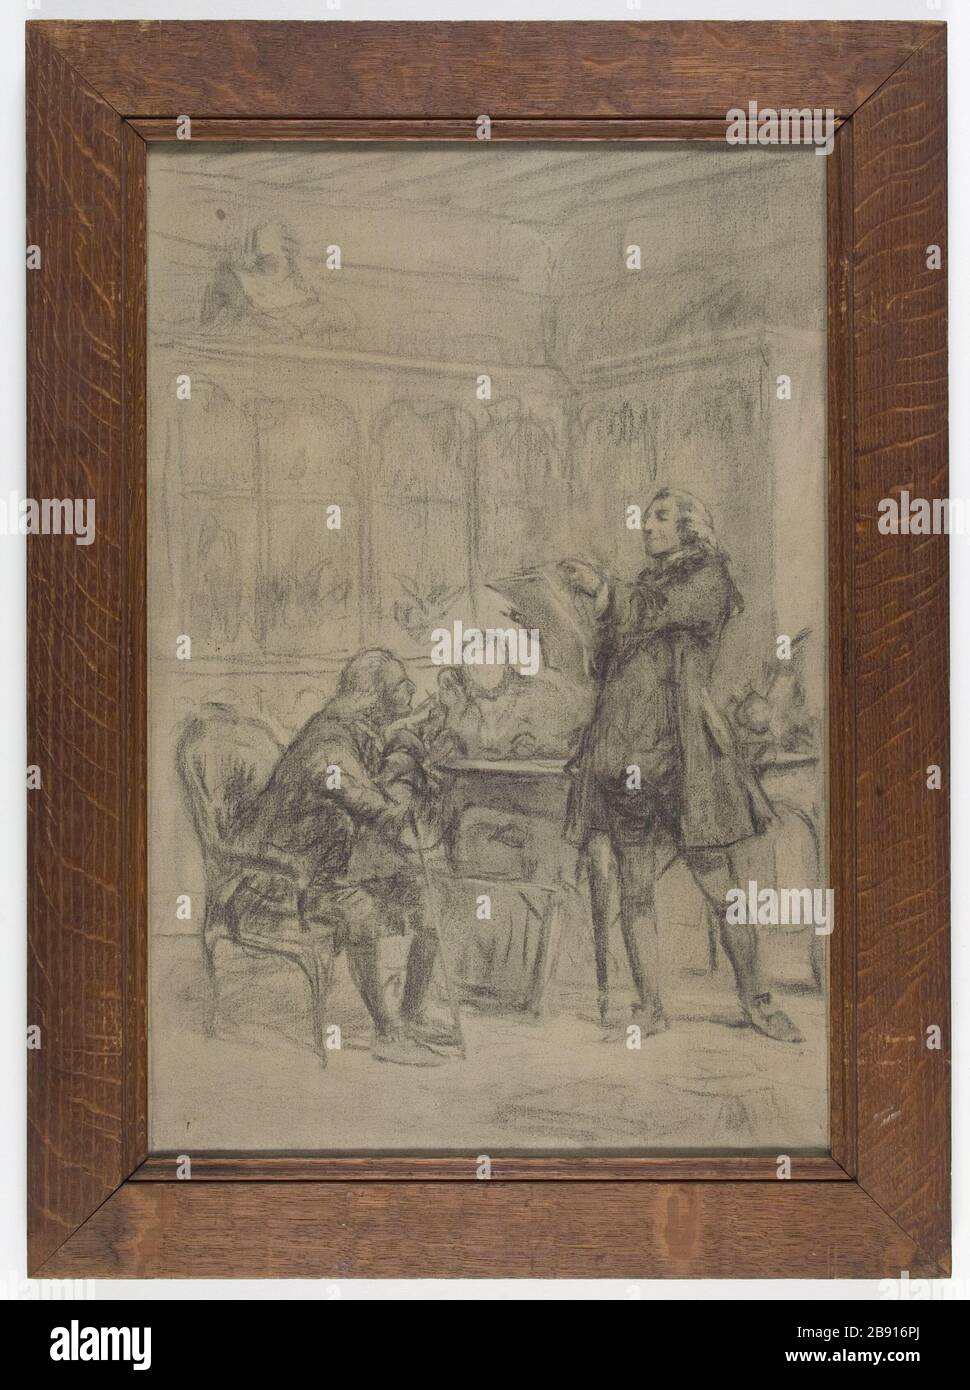 OUTLINE FOR DECORATION SORBONNE Theobald Chartran (1849-1907). 'Esquisse pour la décoration de la Sorbonne'. Fusain et craie blanche sur toile. Paris, musée Carnavalet. Stock Photo